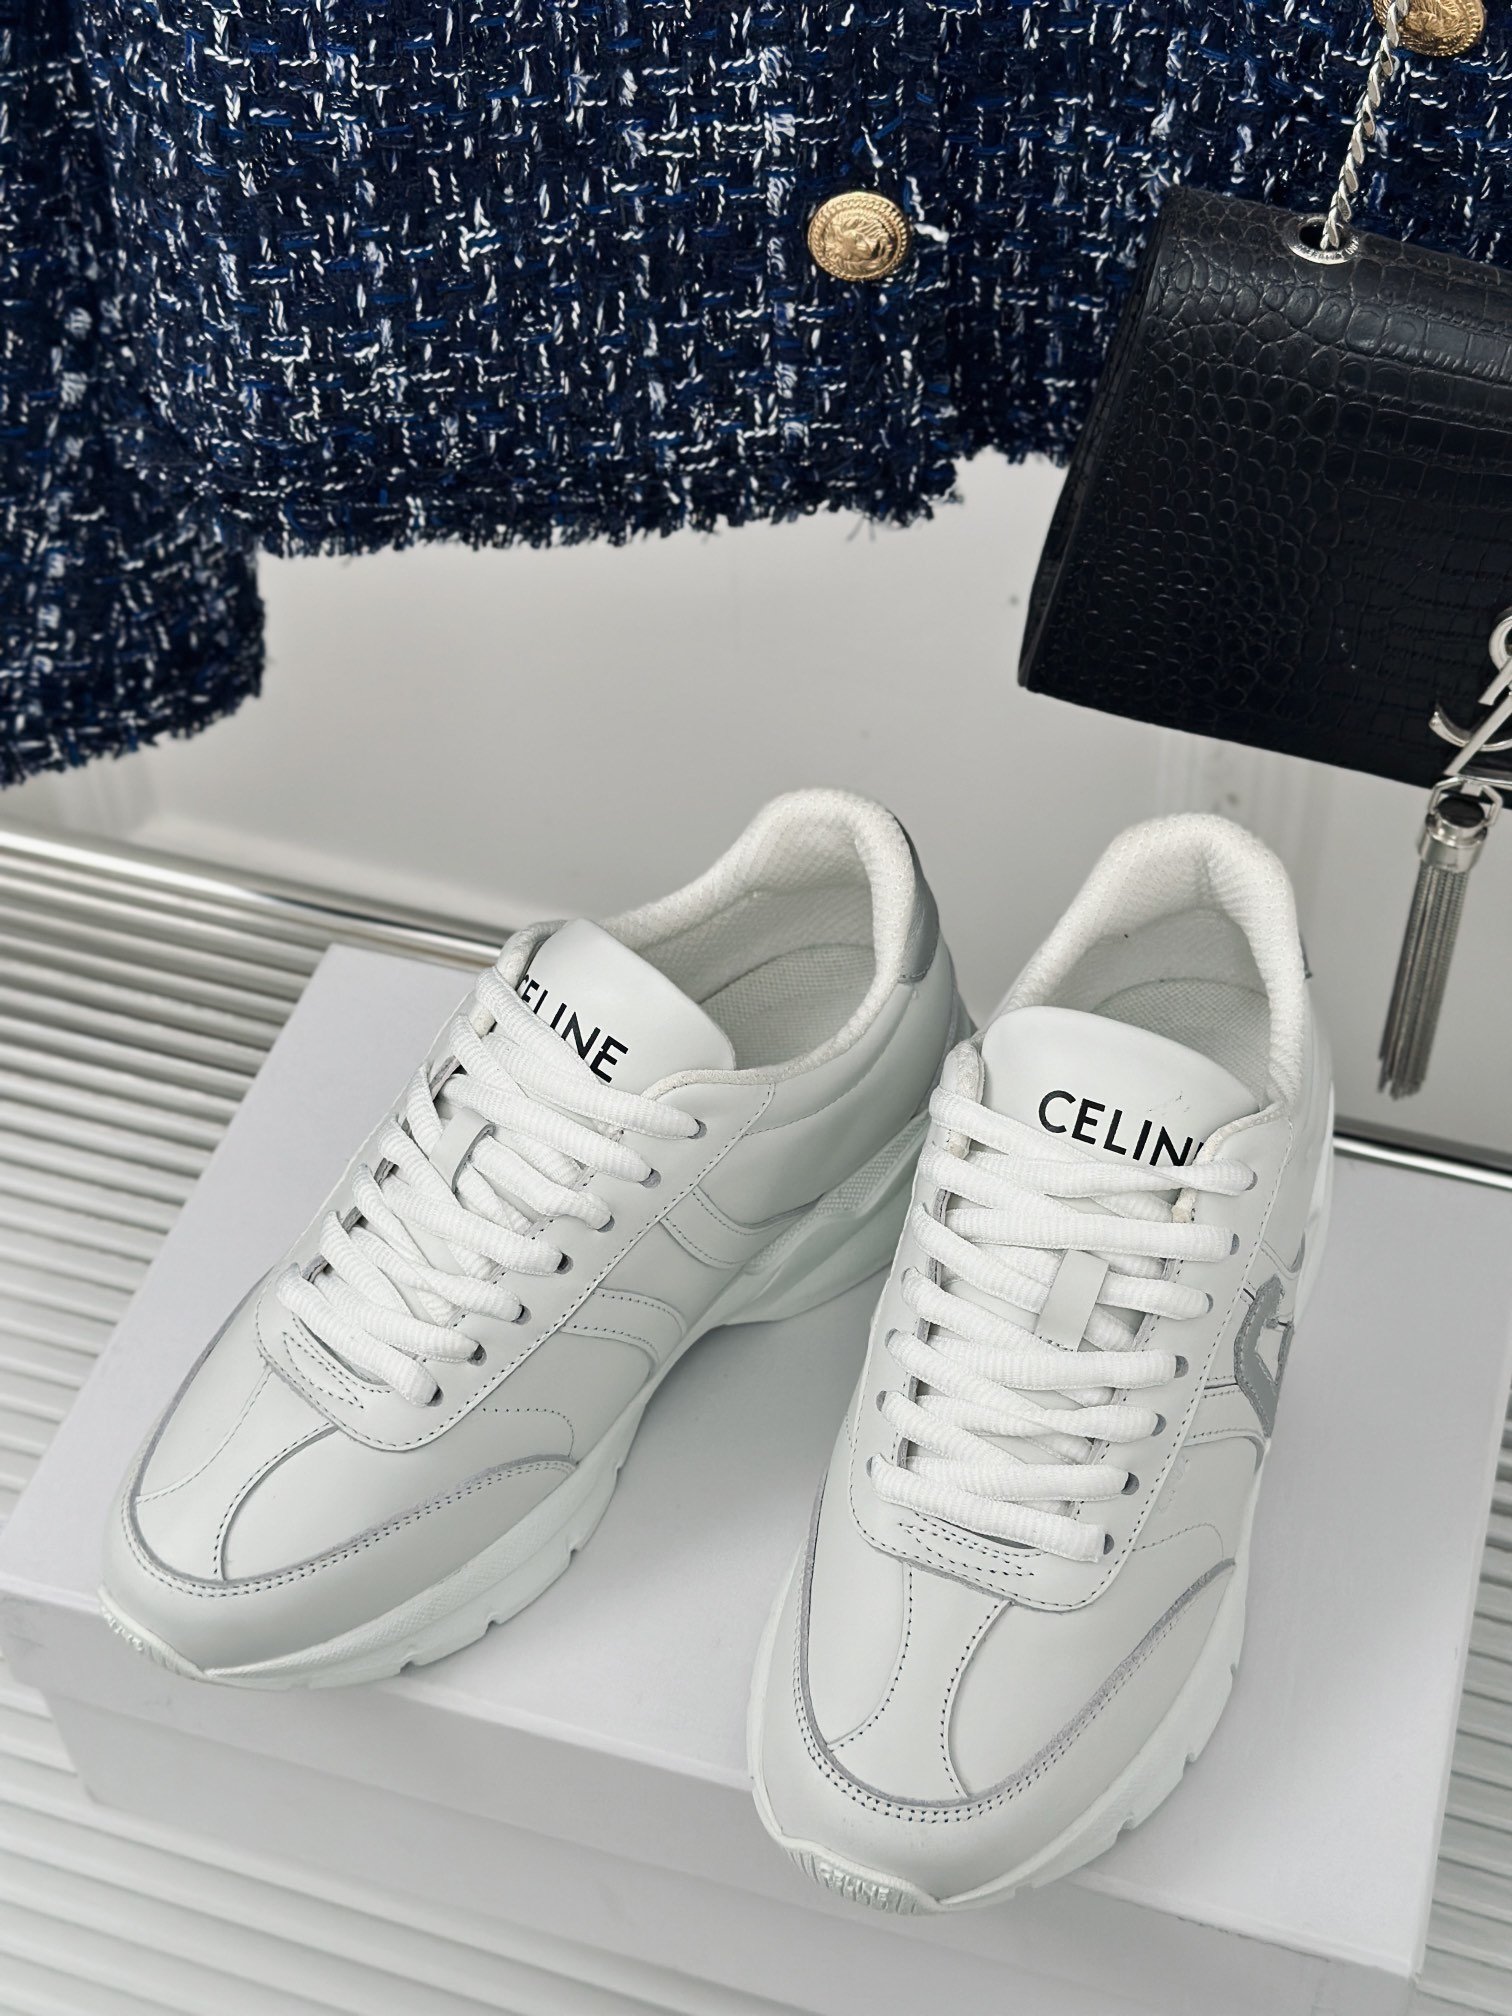 Celine赛琳24/AW新品简约时尚休闲运动鞋老爹鞋️最多网红上脚的一双休闲鞋曝光频率比任何一双都高！